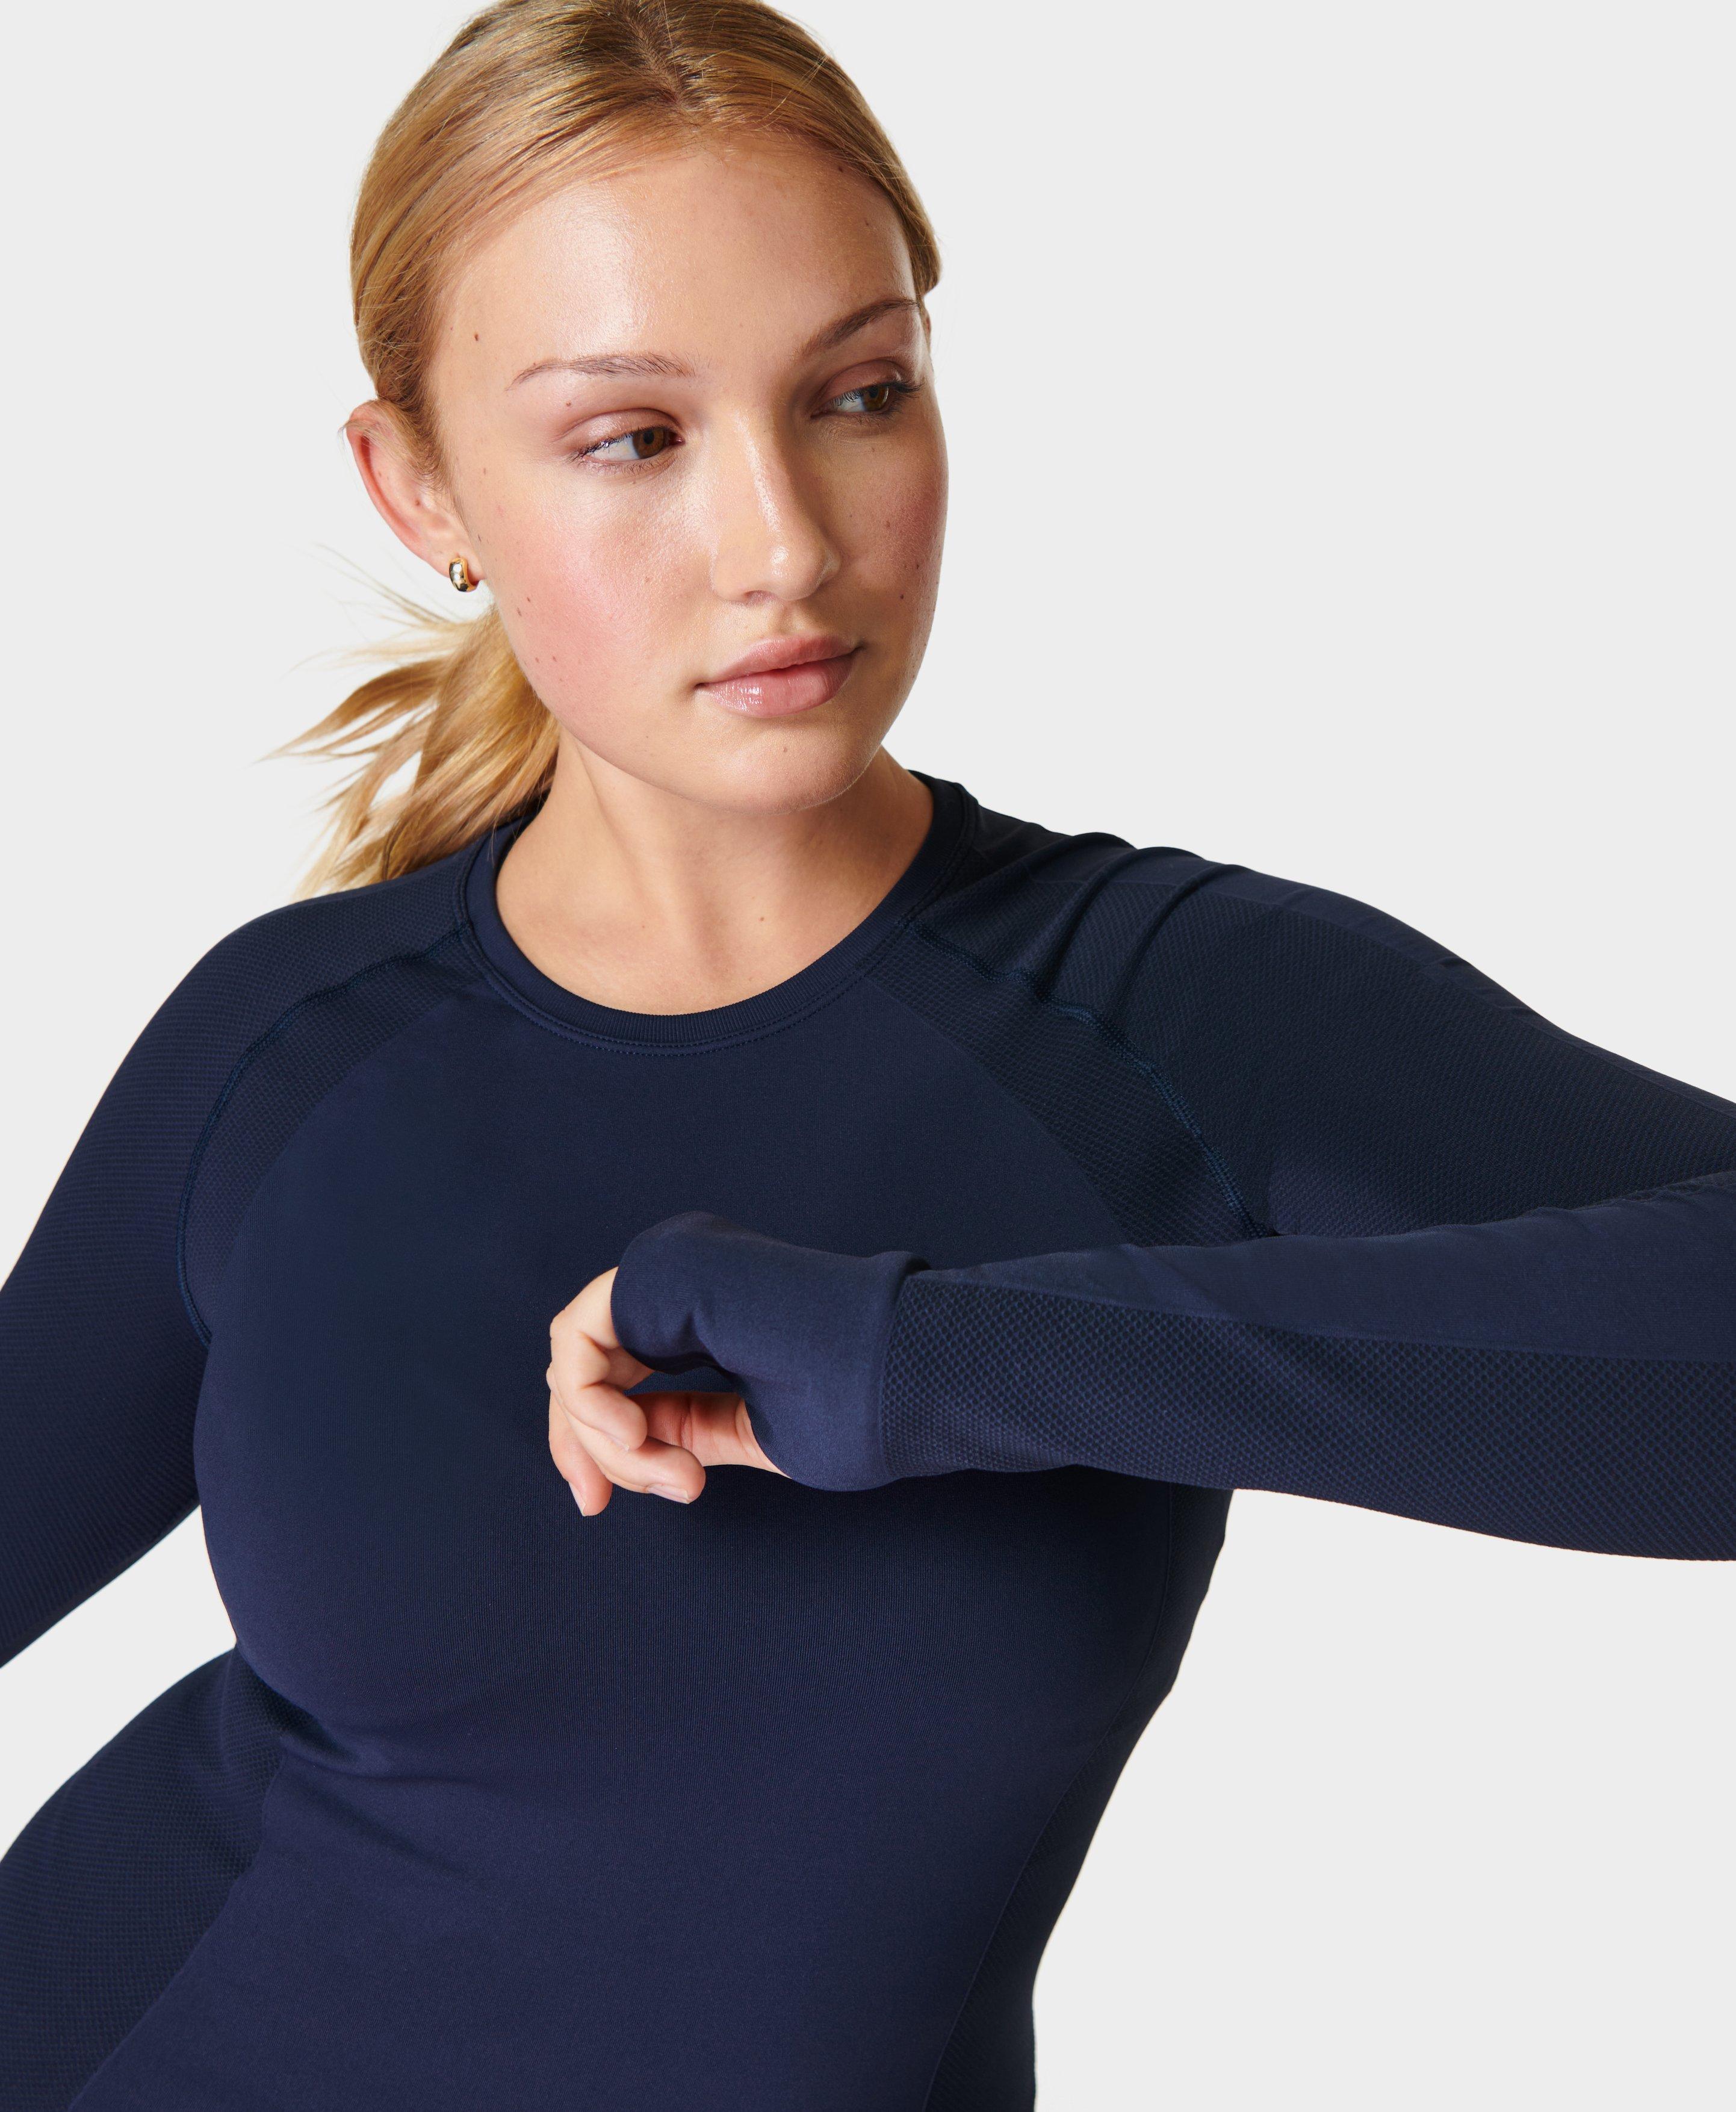 Long Sleeve Running Tops Women Fitness Yoga Shirt Winter Warm Gym Top Sport  Femme Workout Runner T-Shirts Full Sleeve Baseshirts